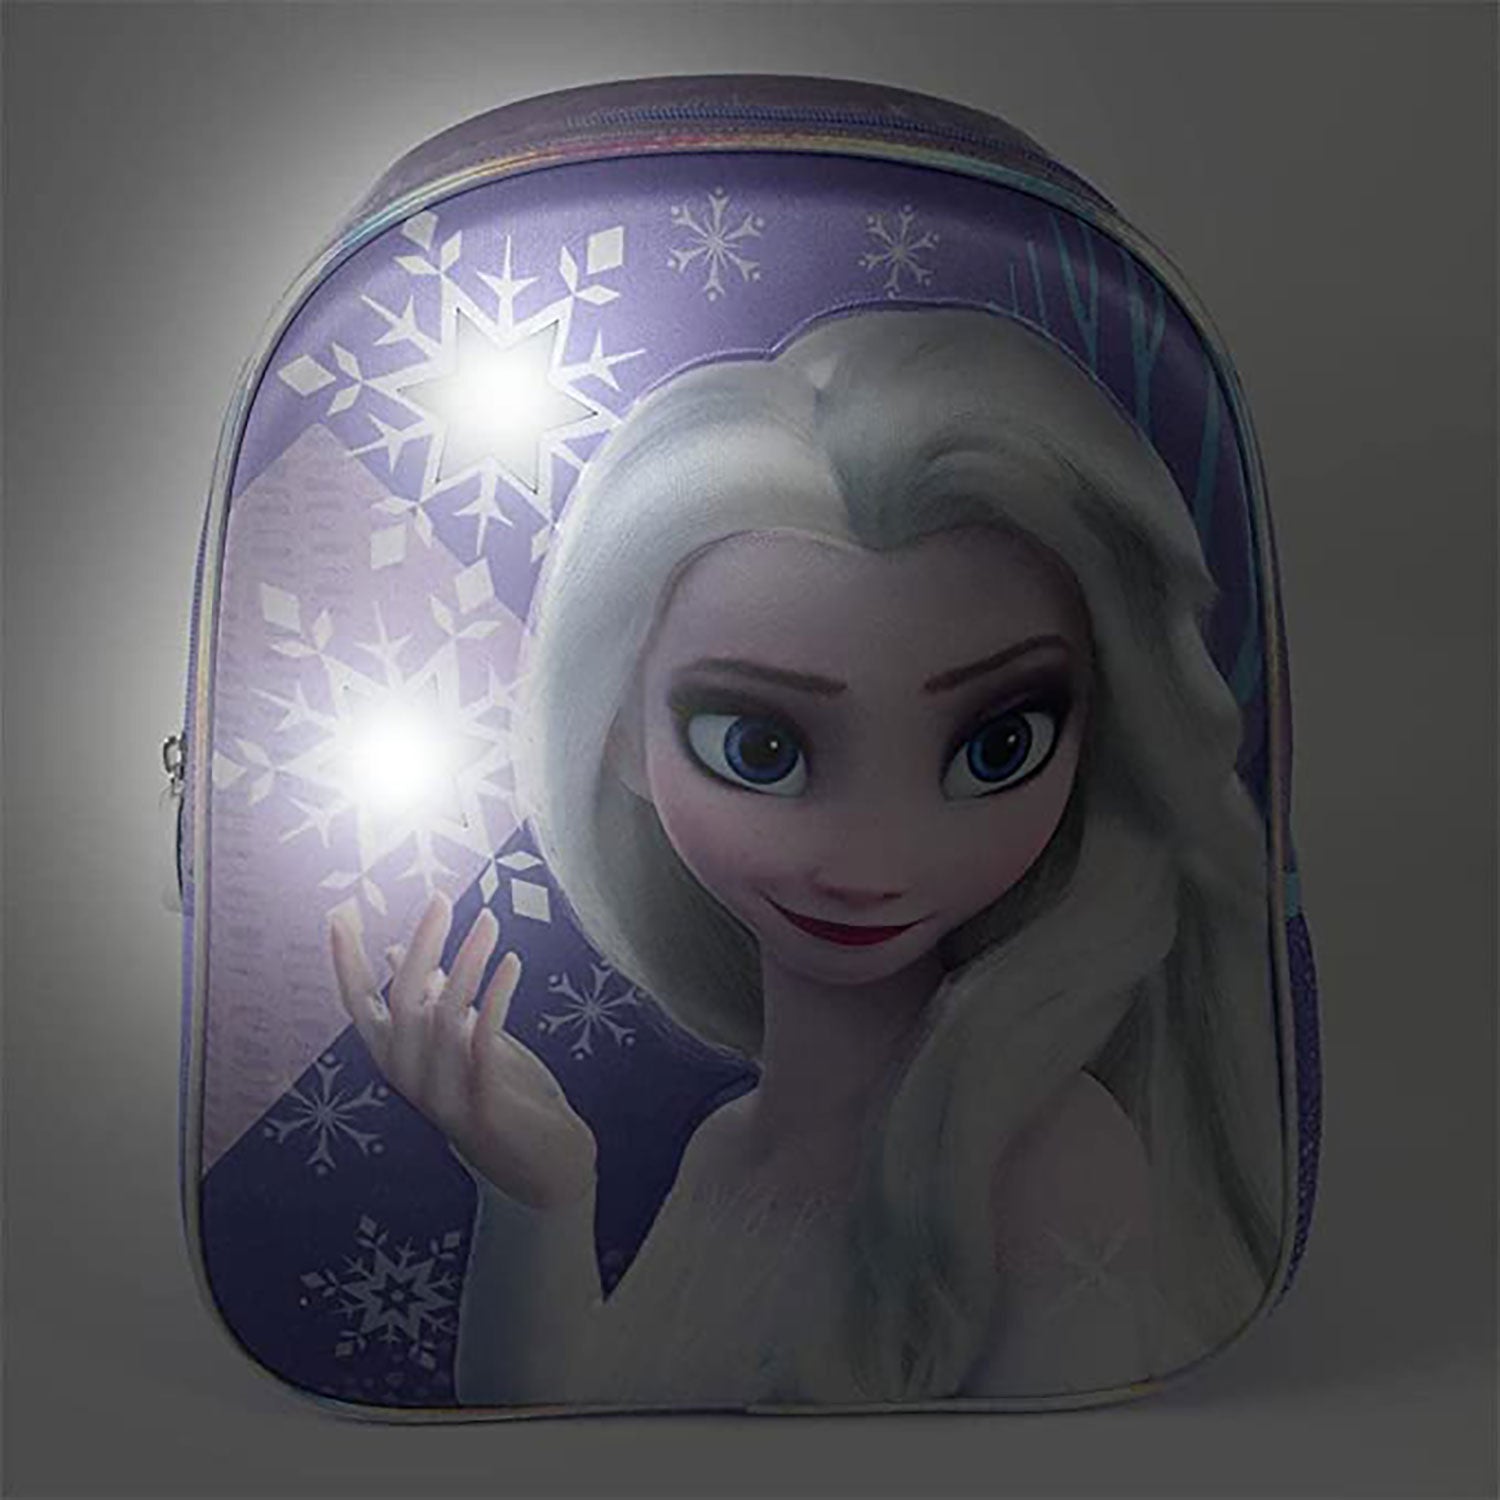 Zaino Disney Frozen zainetto ufficiale con bretelle bambina scuola asilo 5541